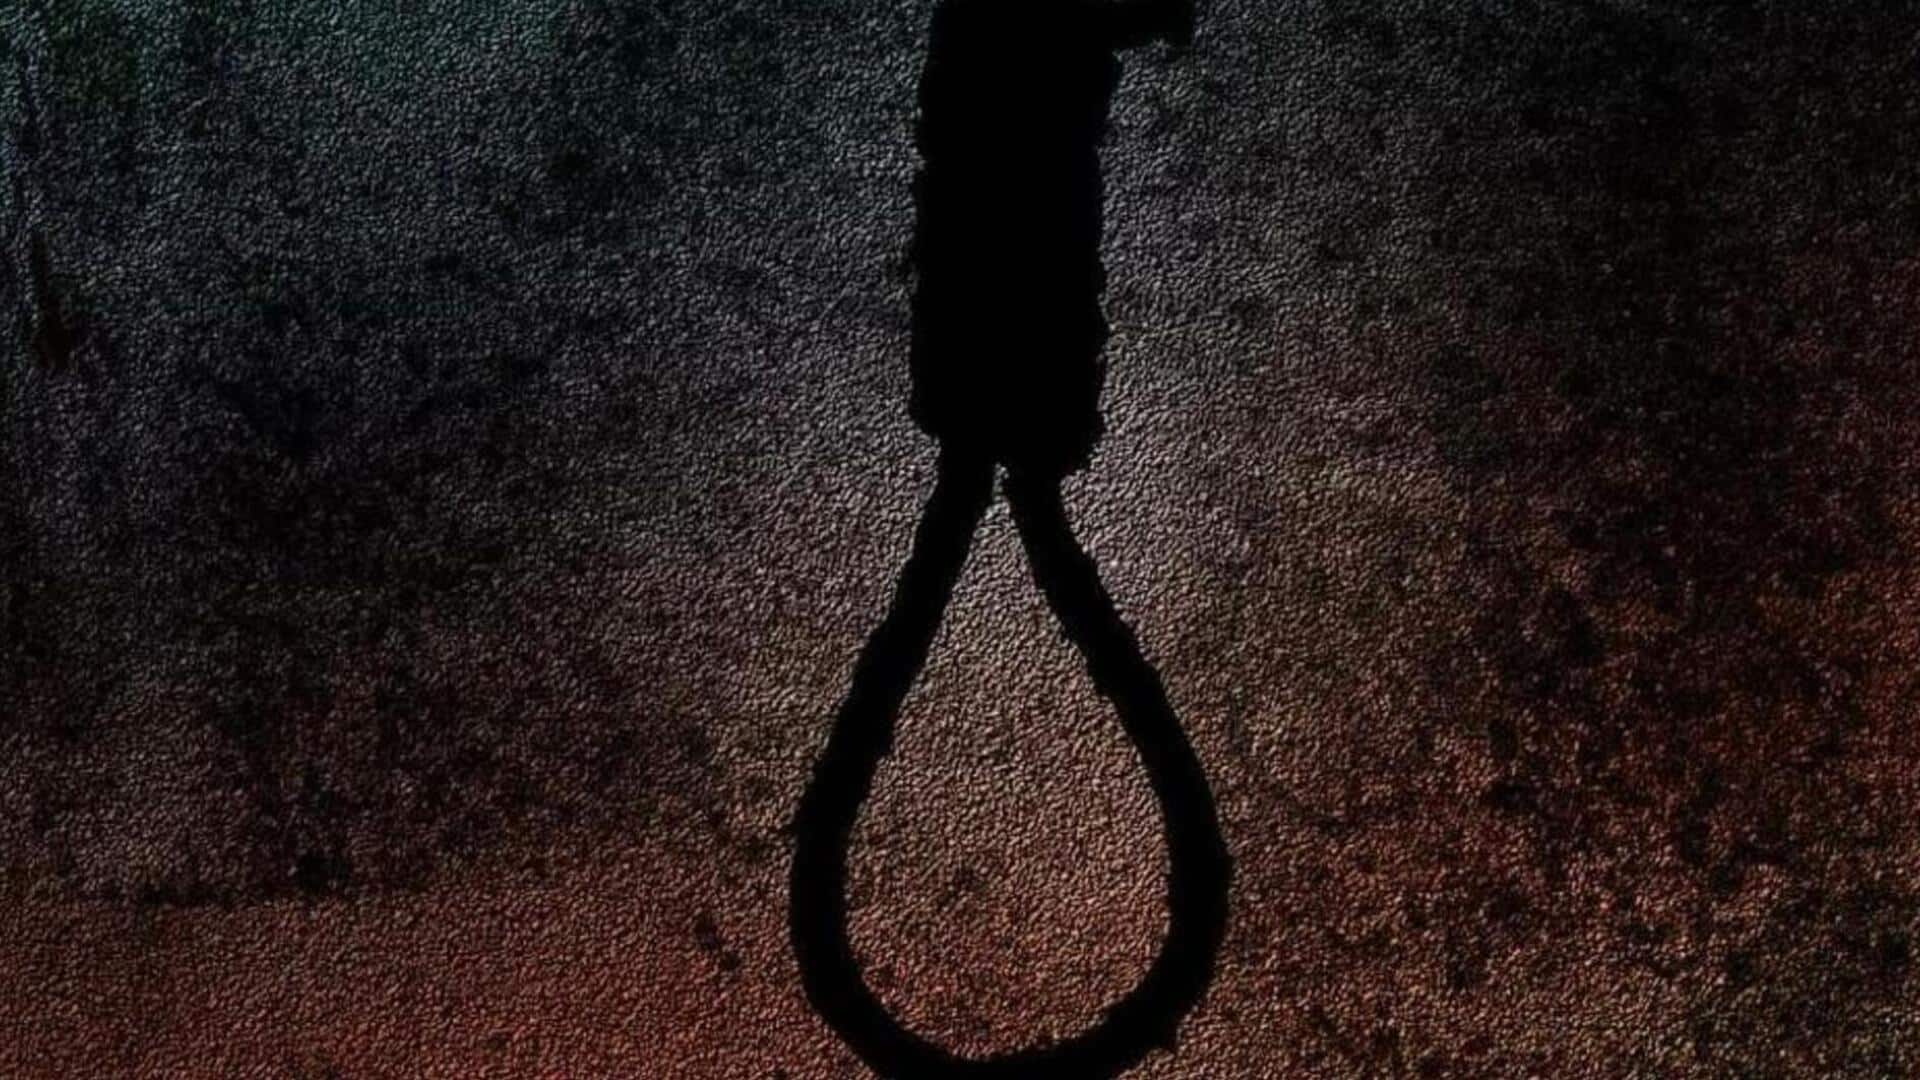 मध्य प्रदेश: भोपाल में कर्ज के कारण एक ही परिवार के 4 लोगों ने की आत्महत्या